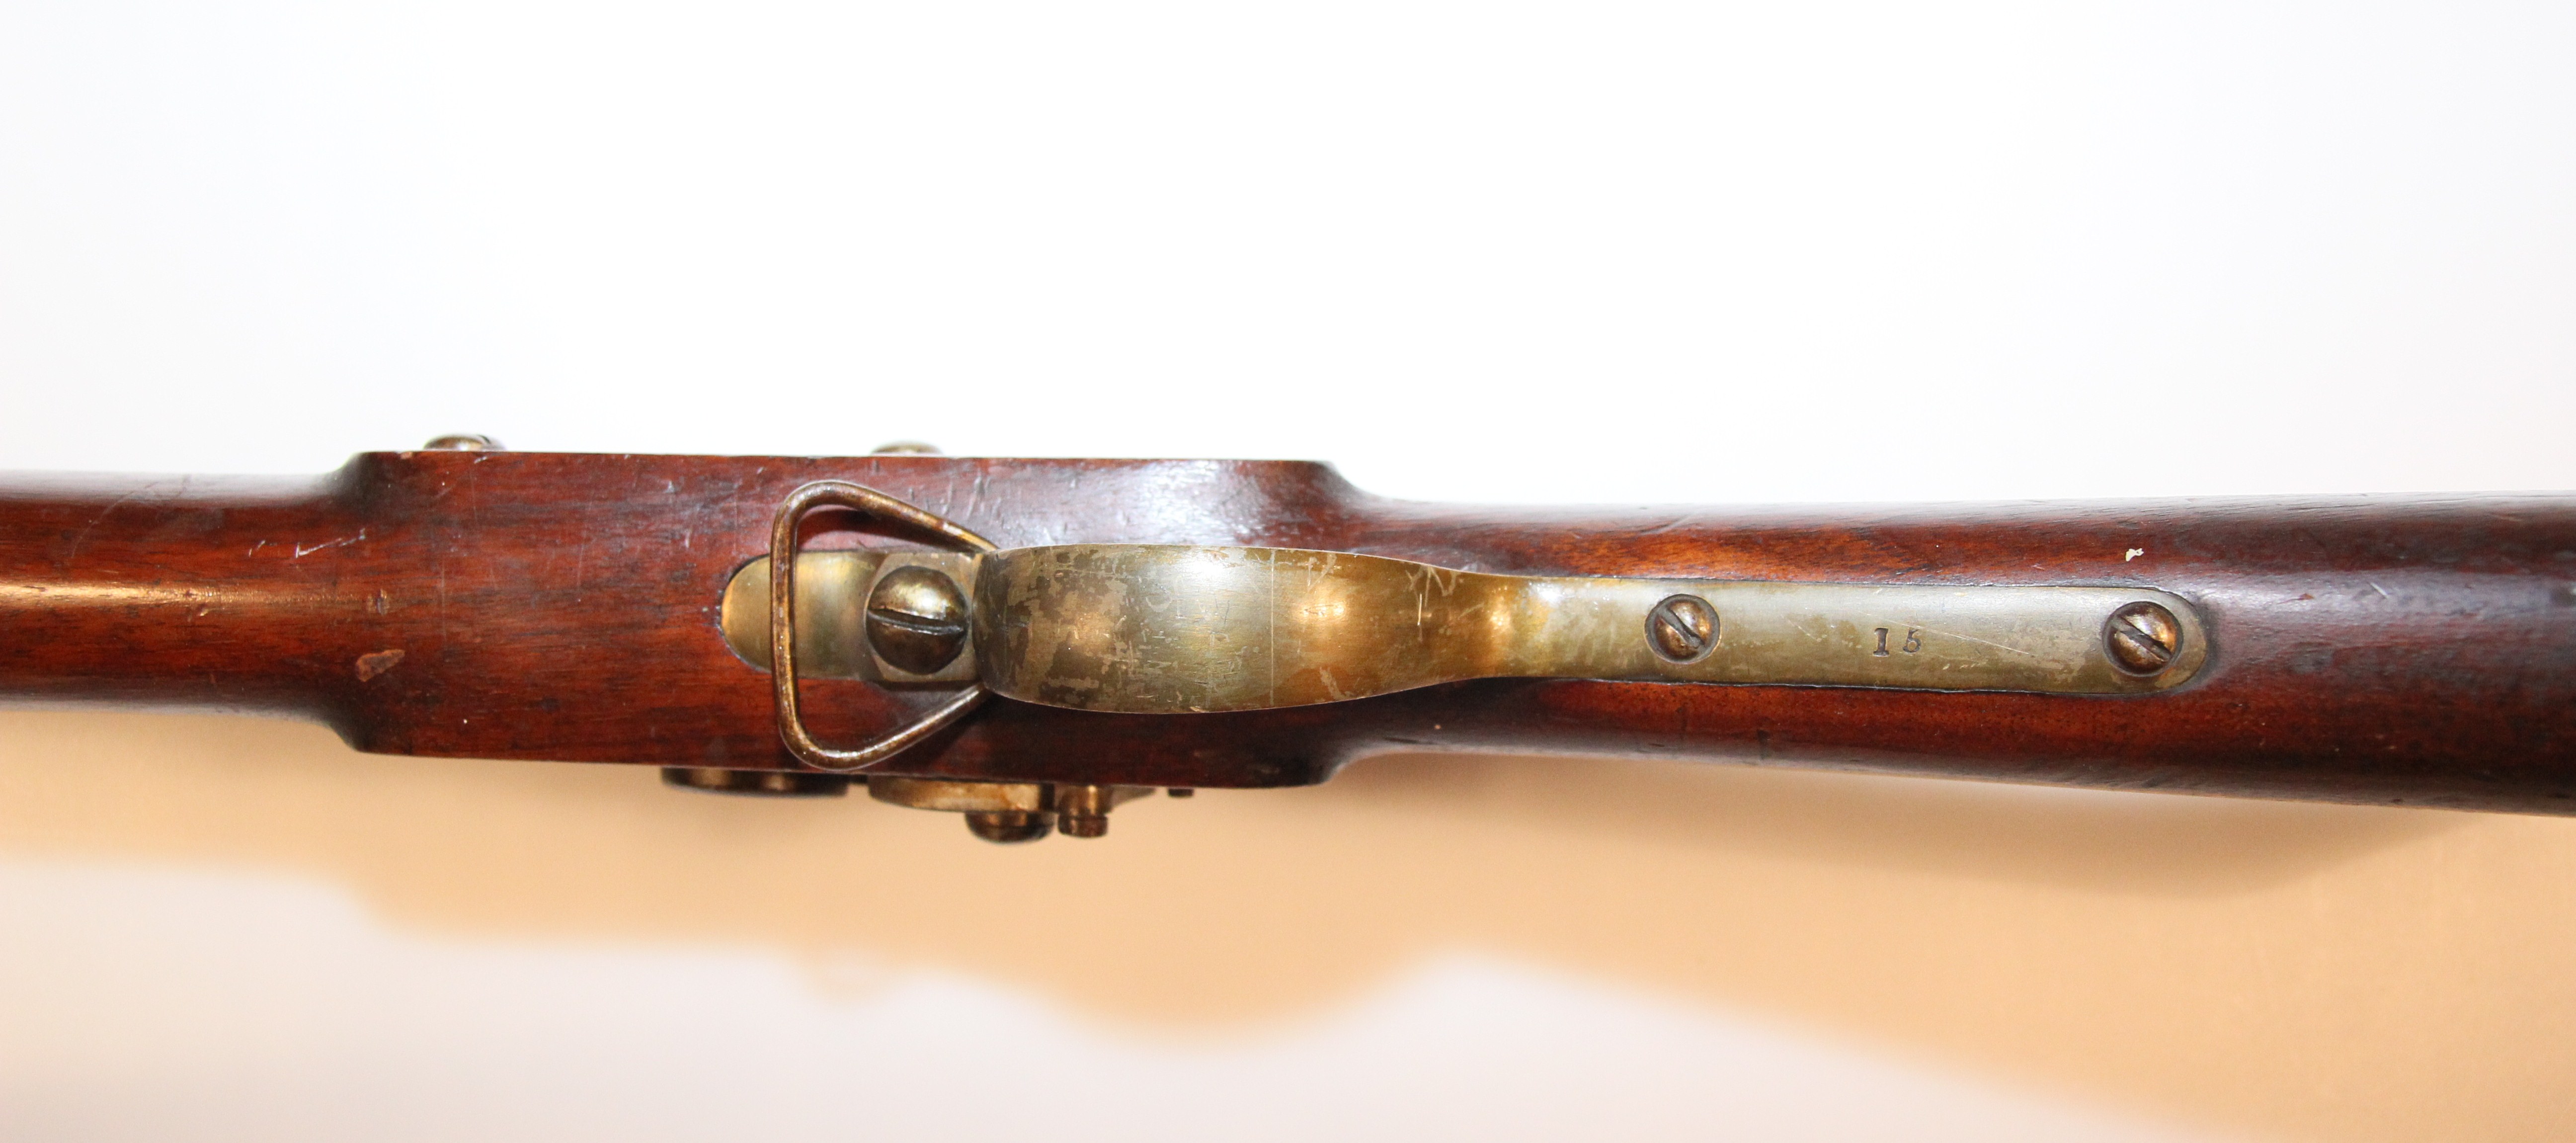 ./guns/rifle/bilder/Muskett-Kongsberg-M1843-Krigsskole-15-6.JPG